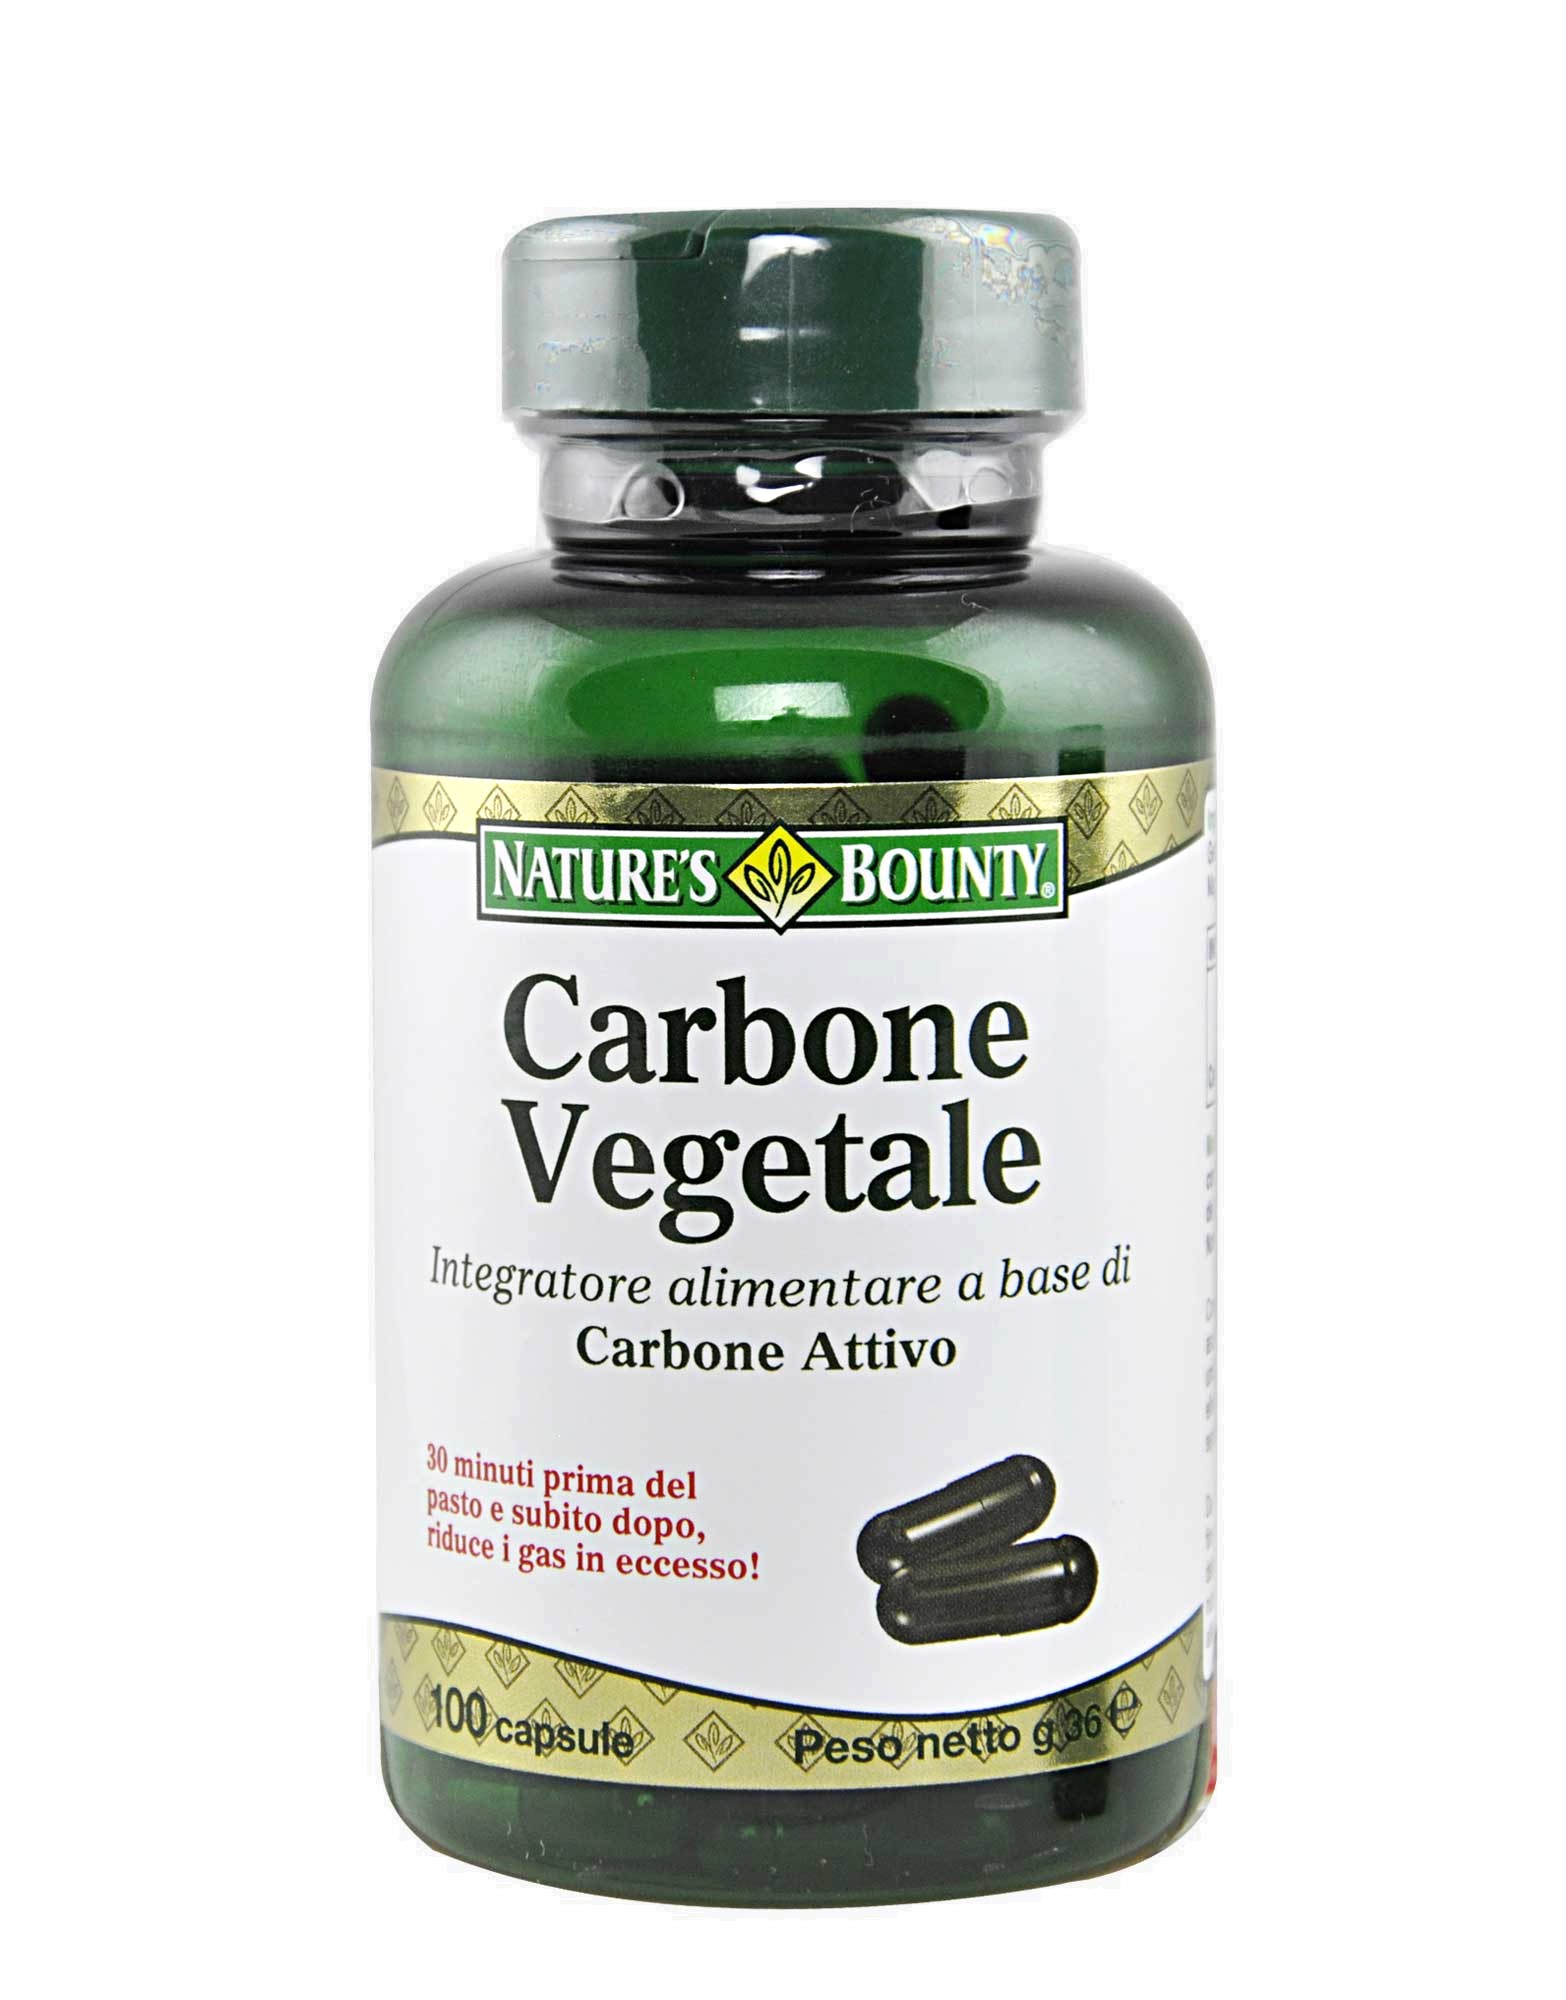 Carbone Vegetale di Nature's bounty, 100 capsule 